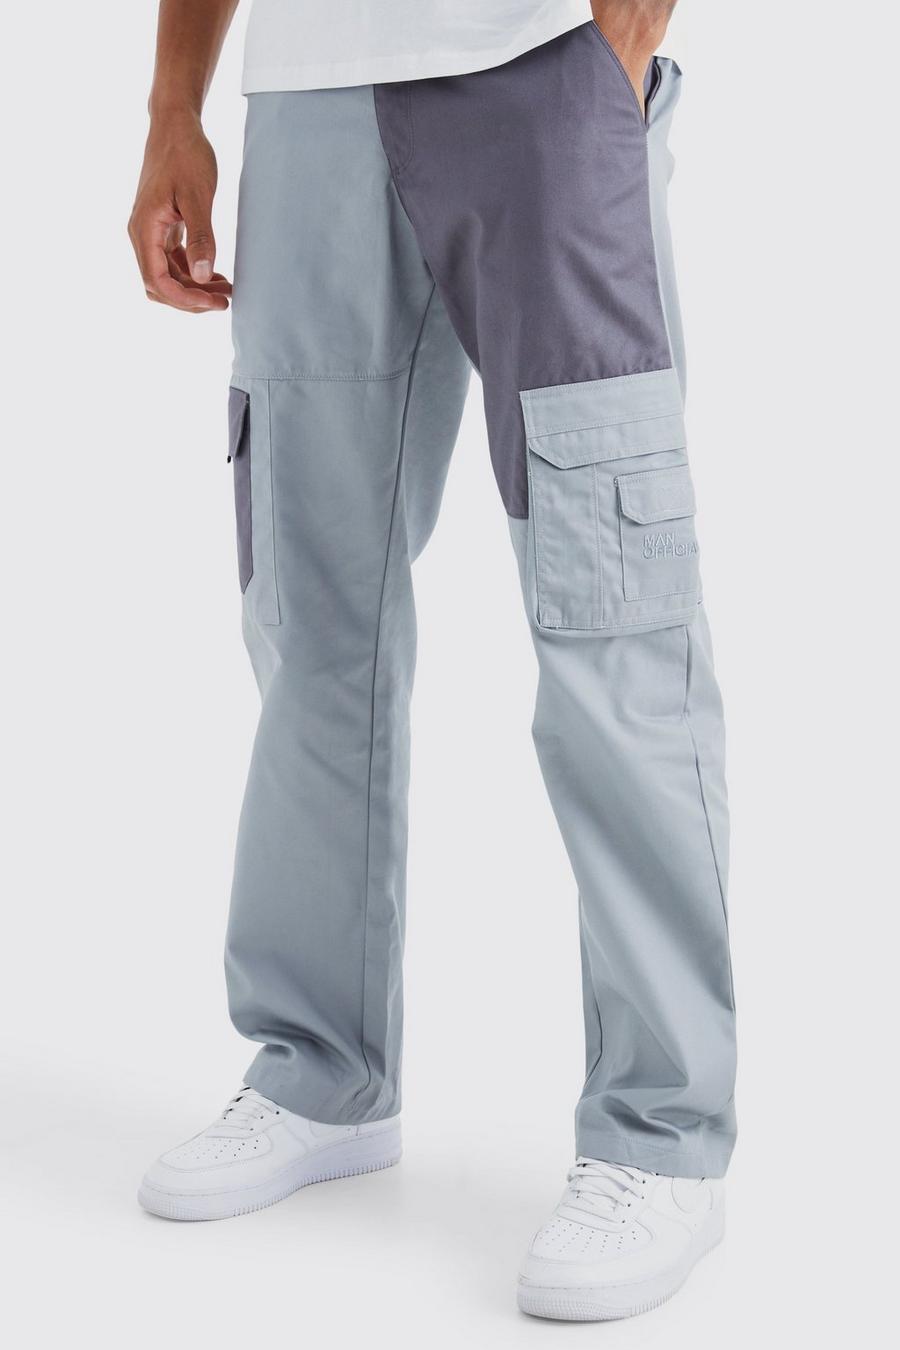 Pantalón Tall cargo holgado con colores en bloque y marca, Charcoal